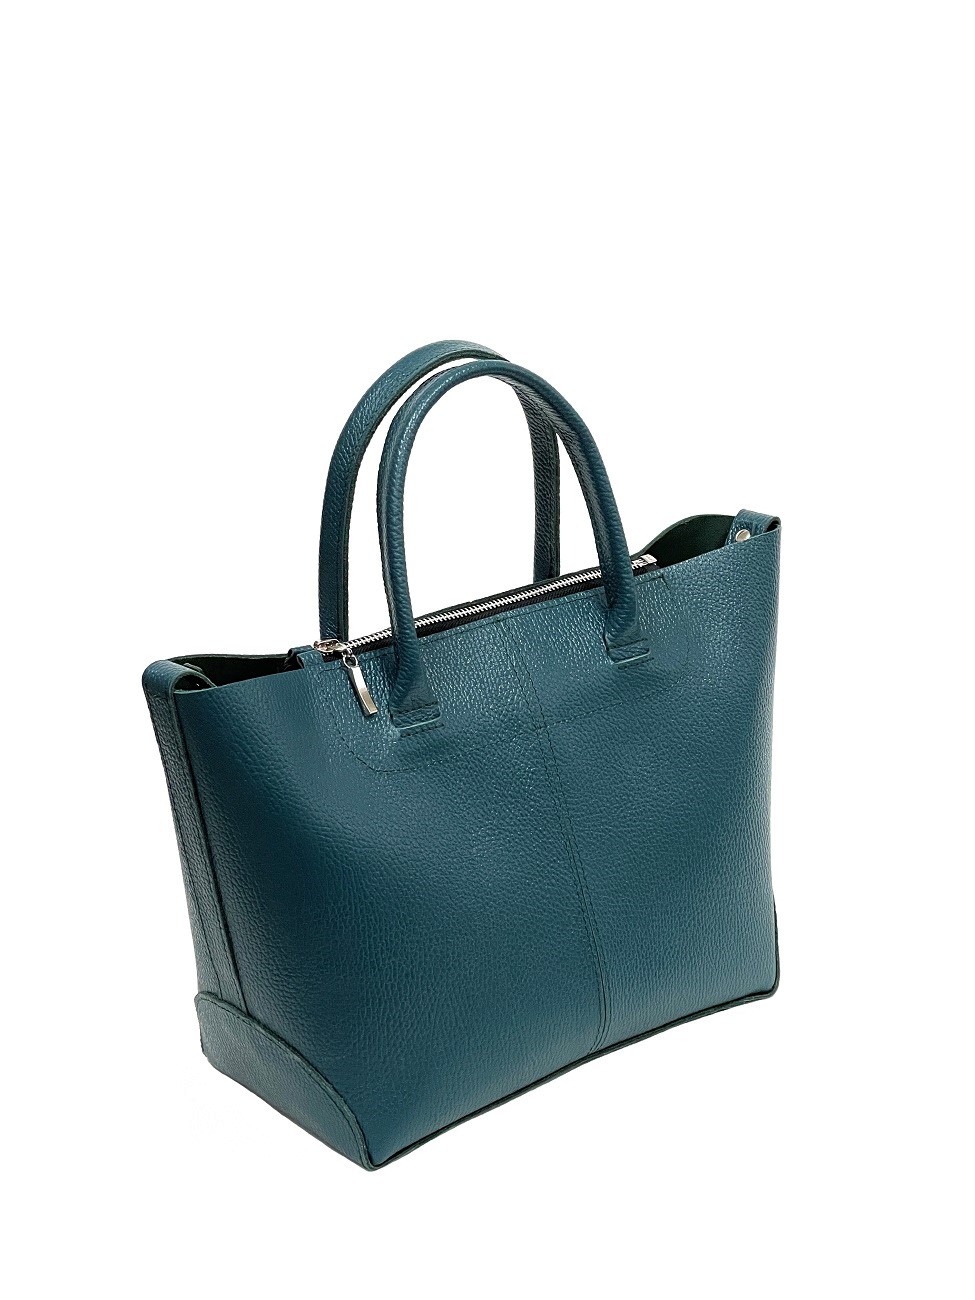 Женская кожаная сумка саквояж-трансформер сине-зеленая A020 teal mini grain